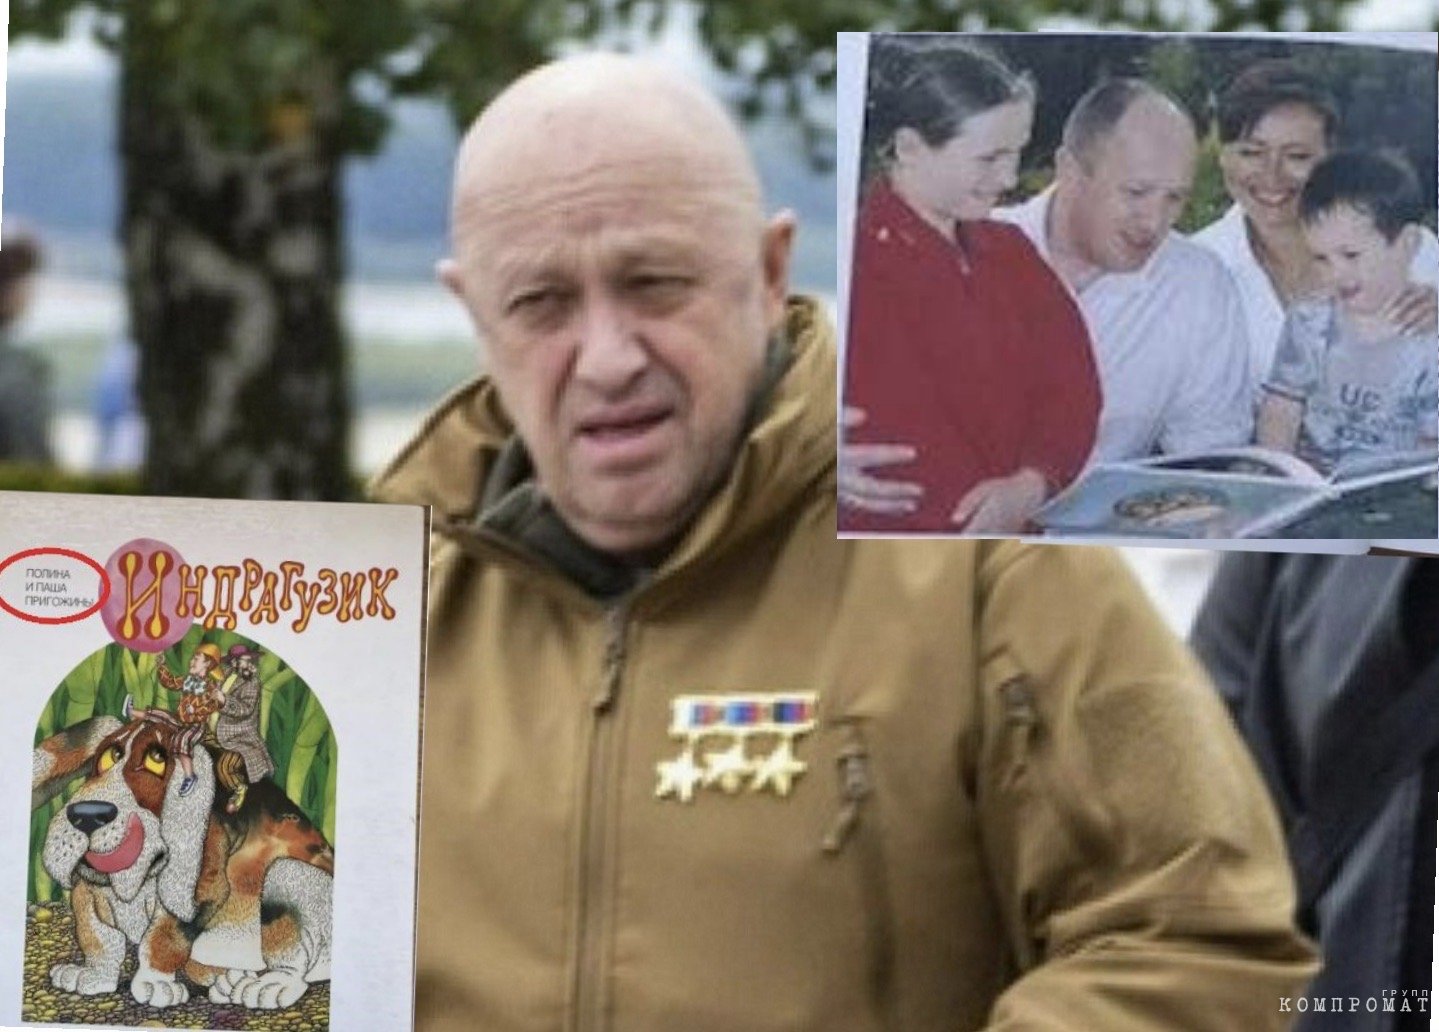 Yevgeny Prigozhin, the real author of Indraguzikov, and a family photo from the book hzikhidtidekrt